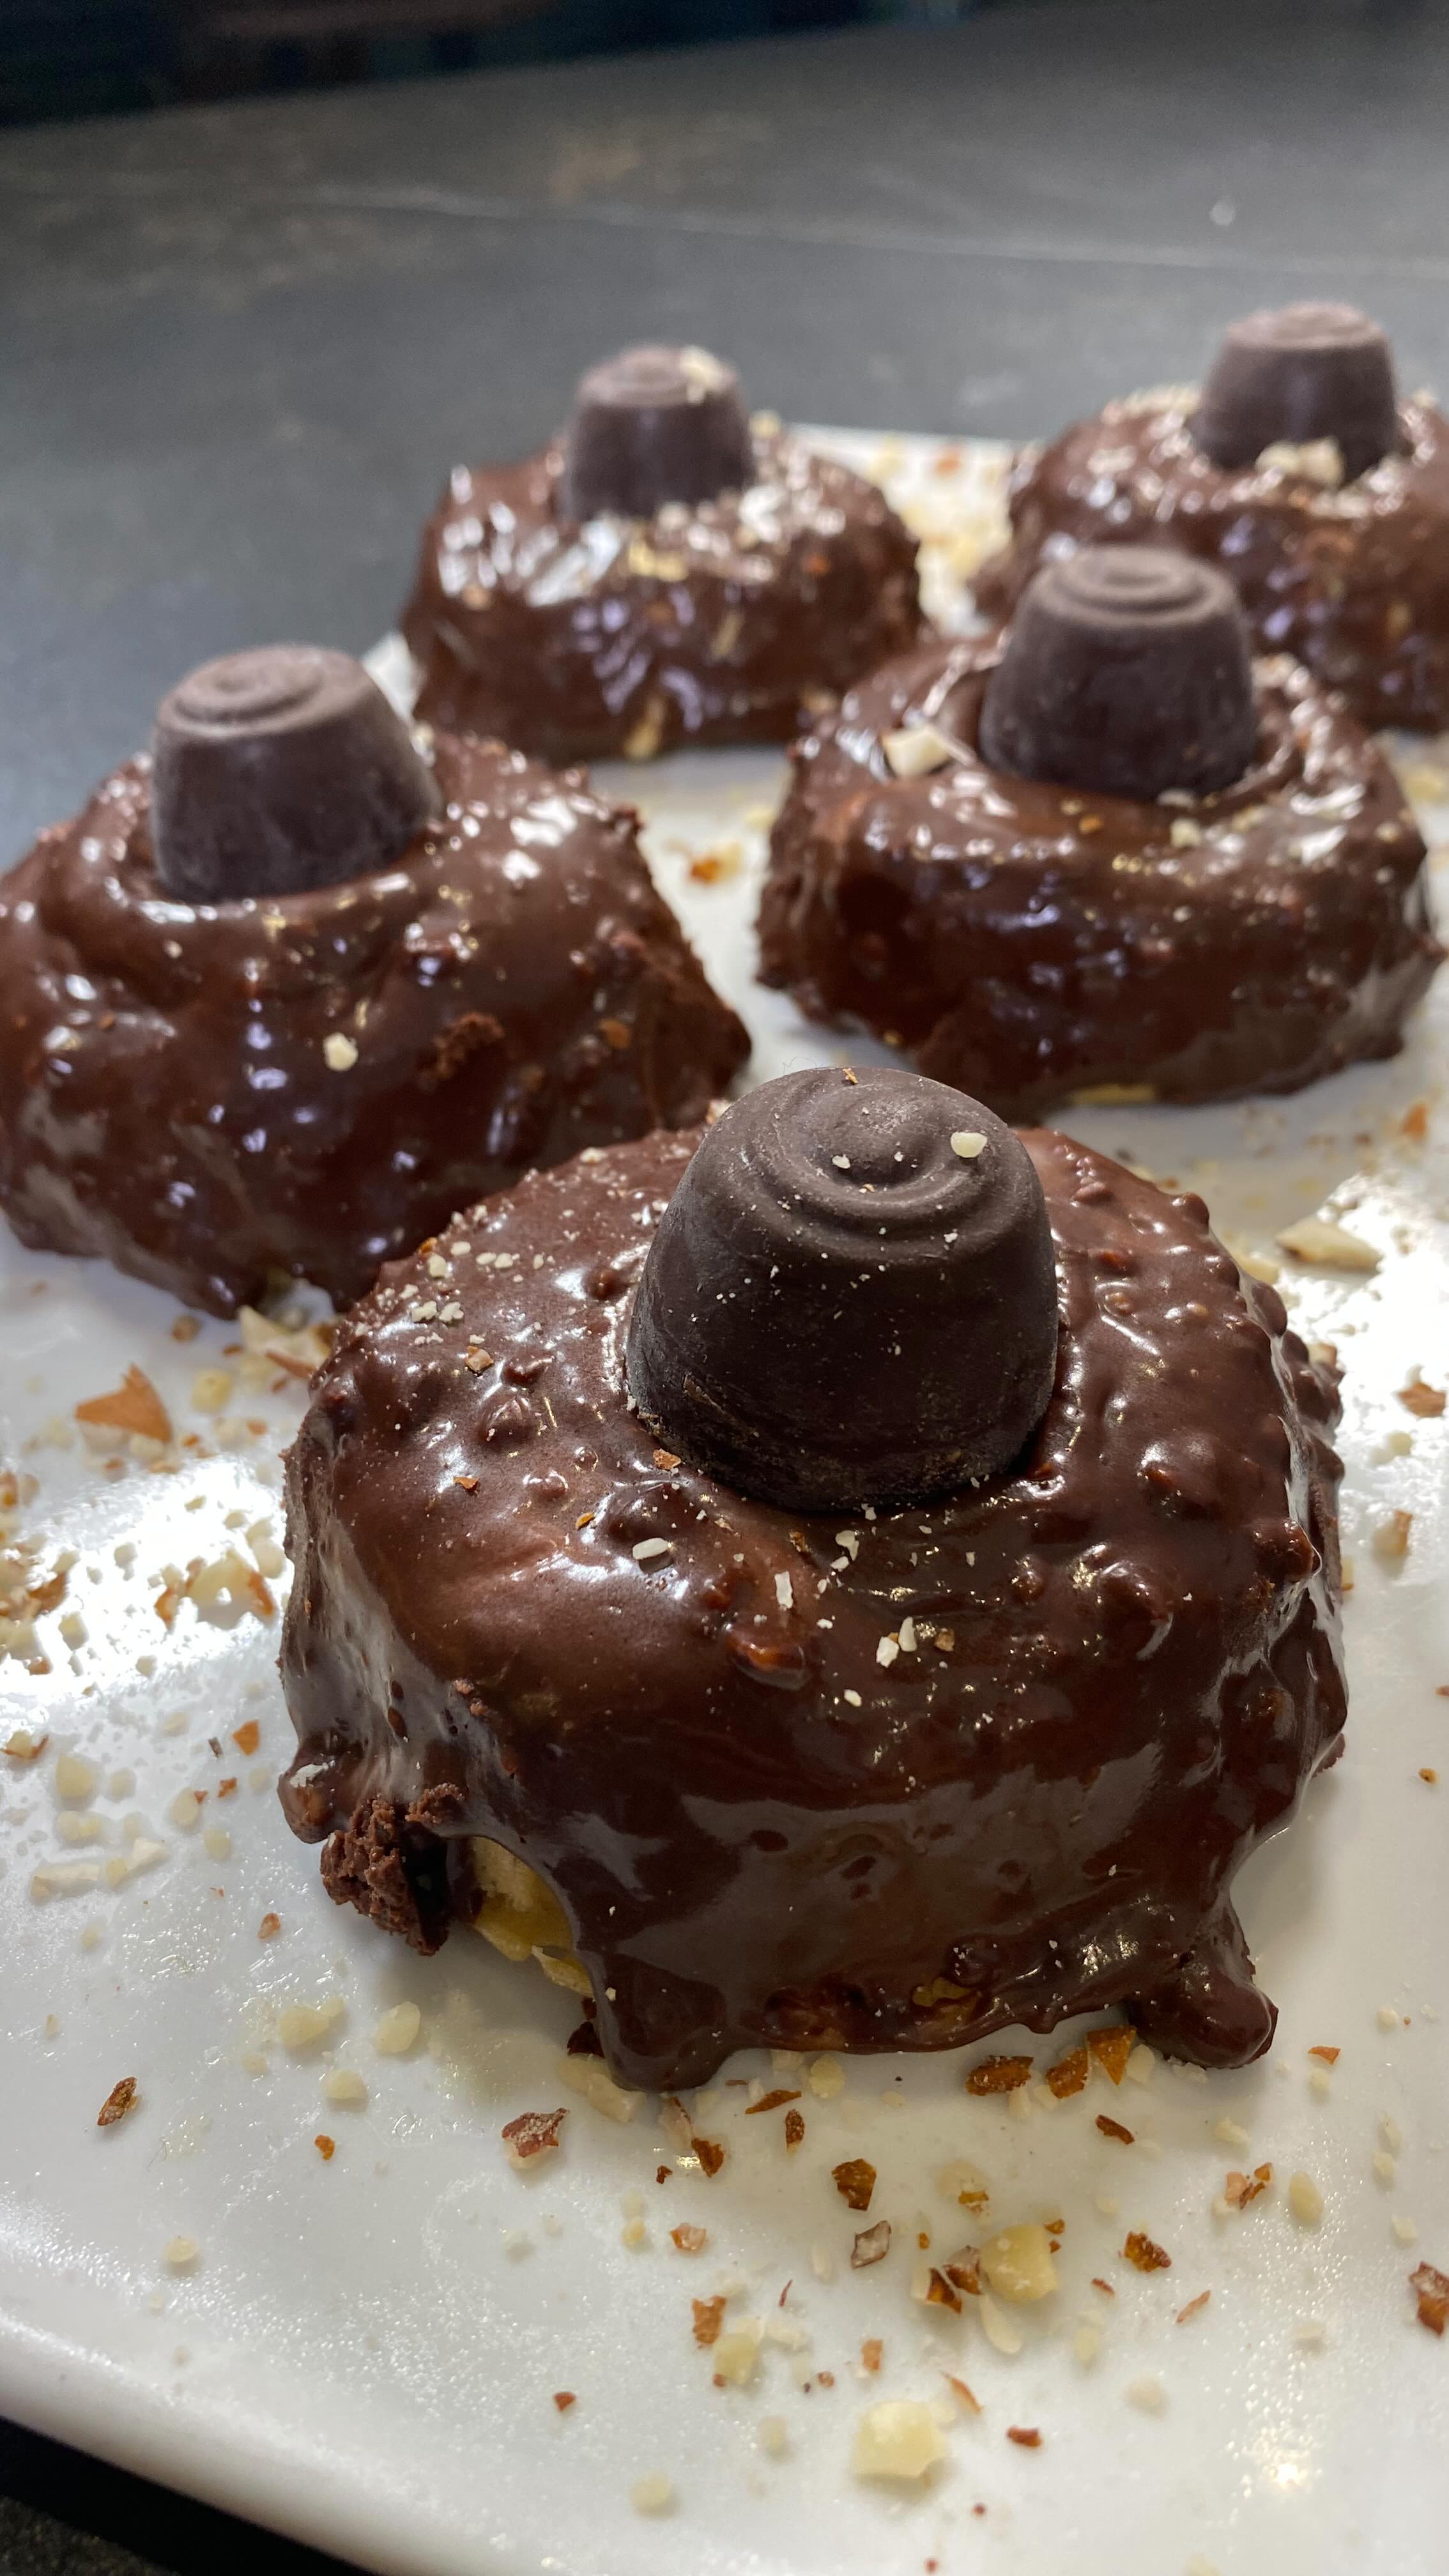 🍩 DONUT CROCANTE 🍩
.
GUÁRDATE esta receta de donut crocante que te va a encantar! 
.
Además está hecho en el microondas, medio saludable y sin gluten… 😍
.
Si te ha gustado no dejes de darle LIKE y COMPÁRTELA con tus amigos.
.
#donut #cocinacasera #bakery #postres #chocolate